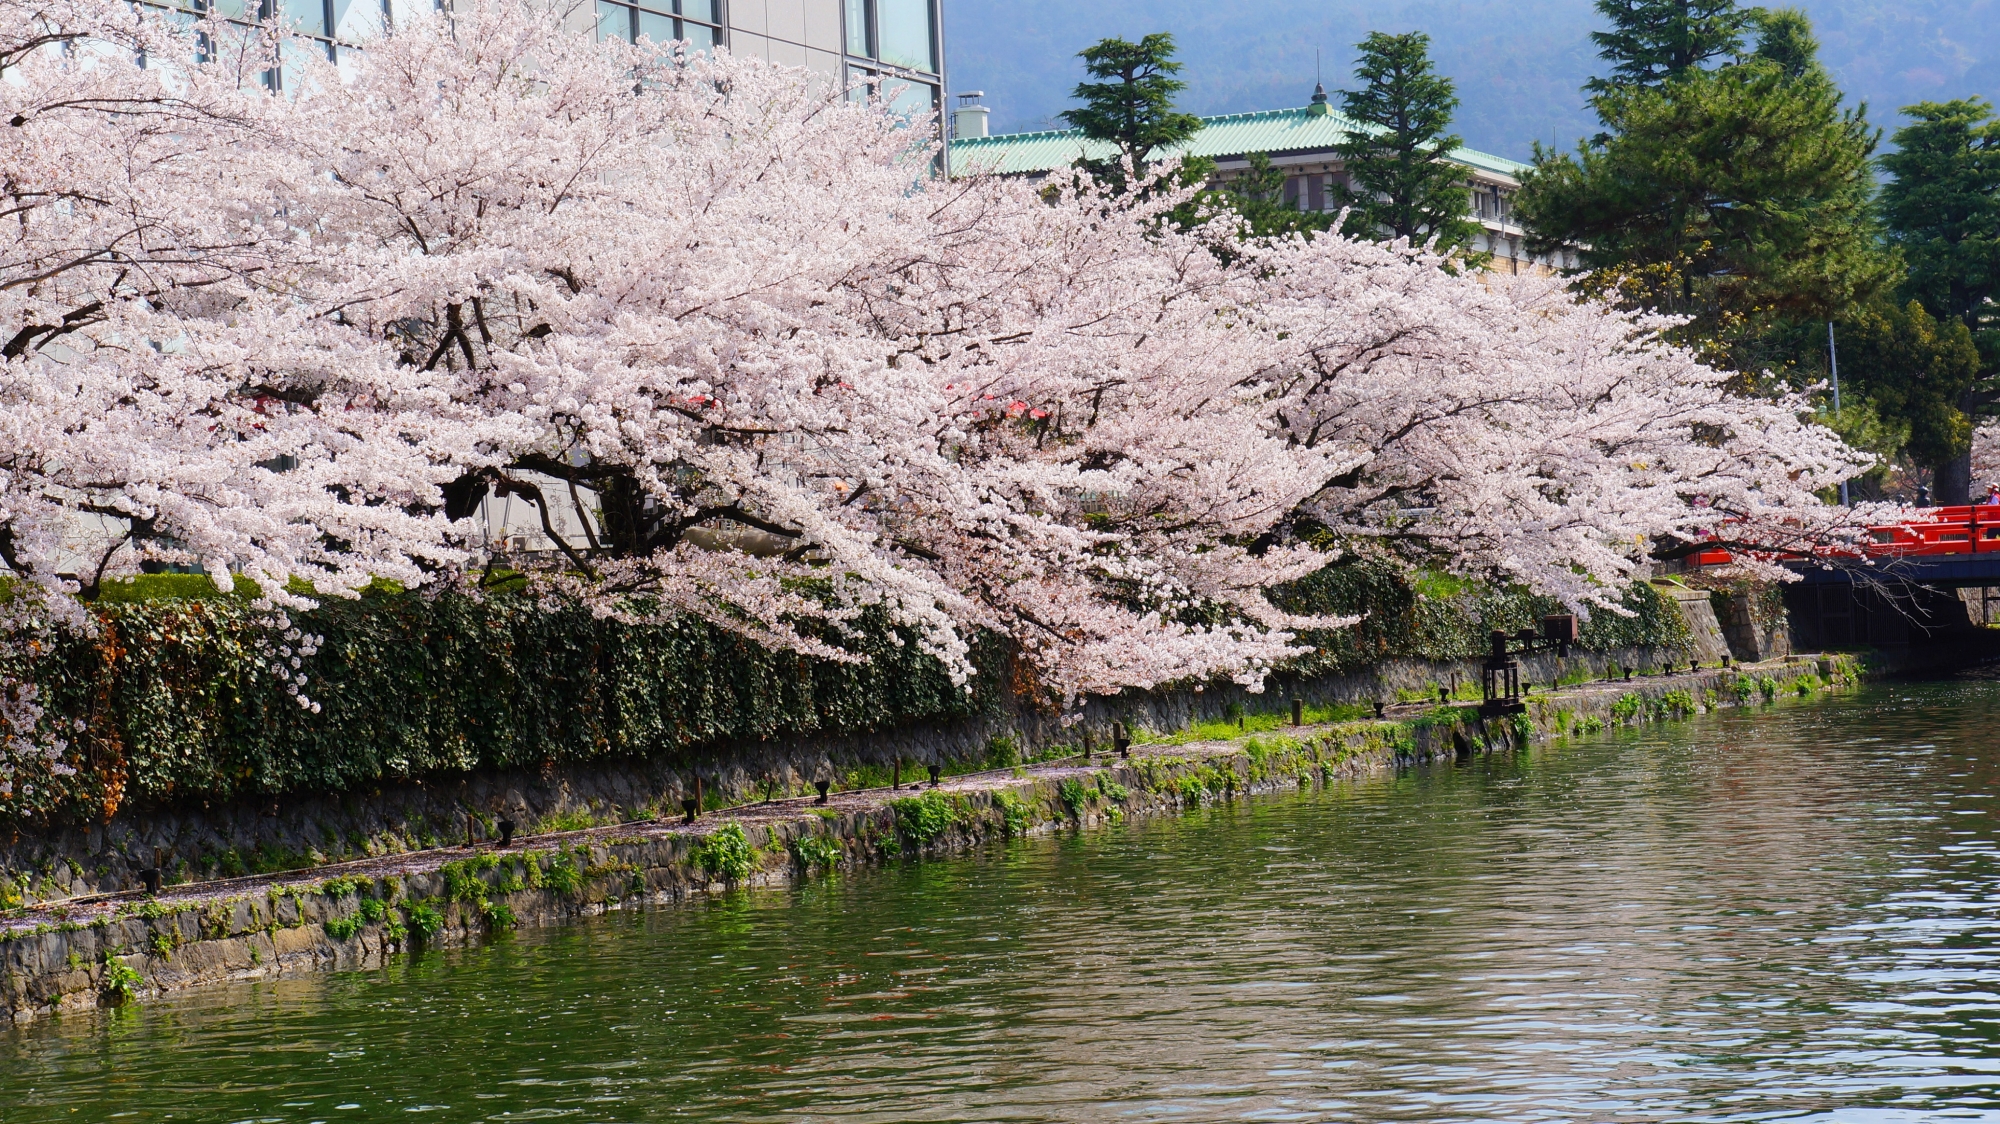 京都の桜の名所として有名な岡崎疏水